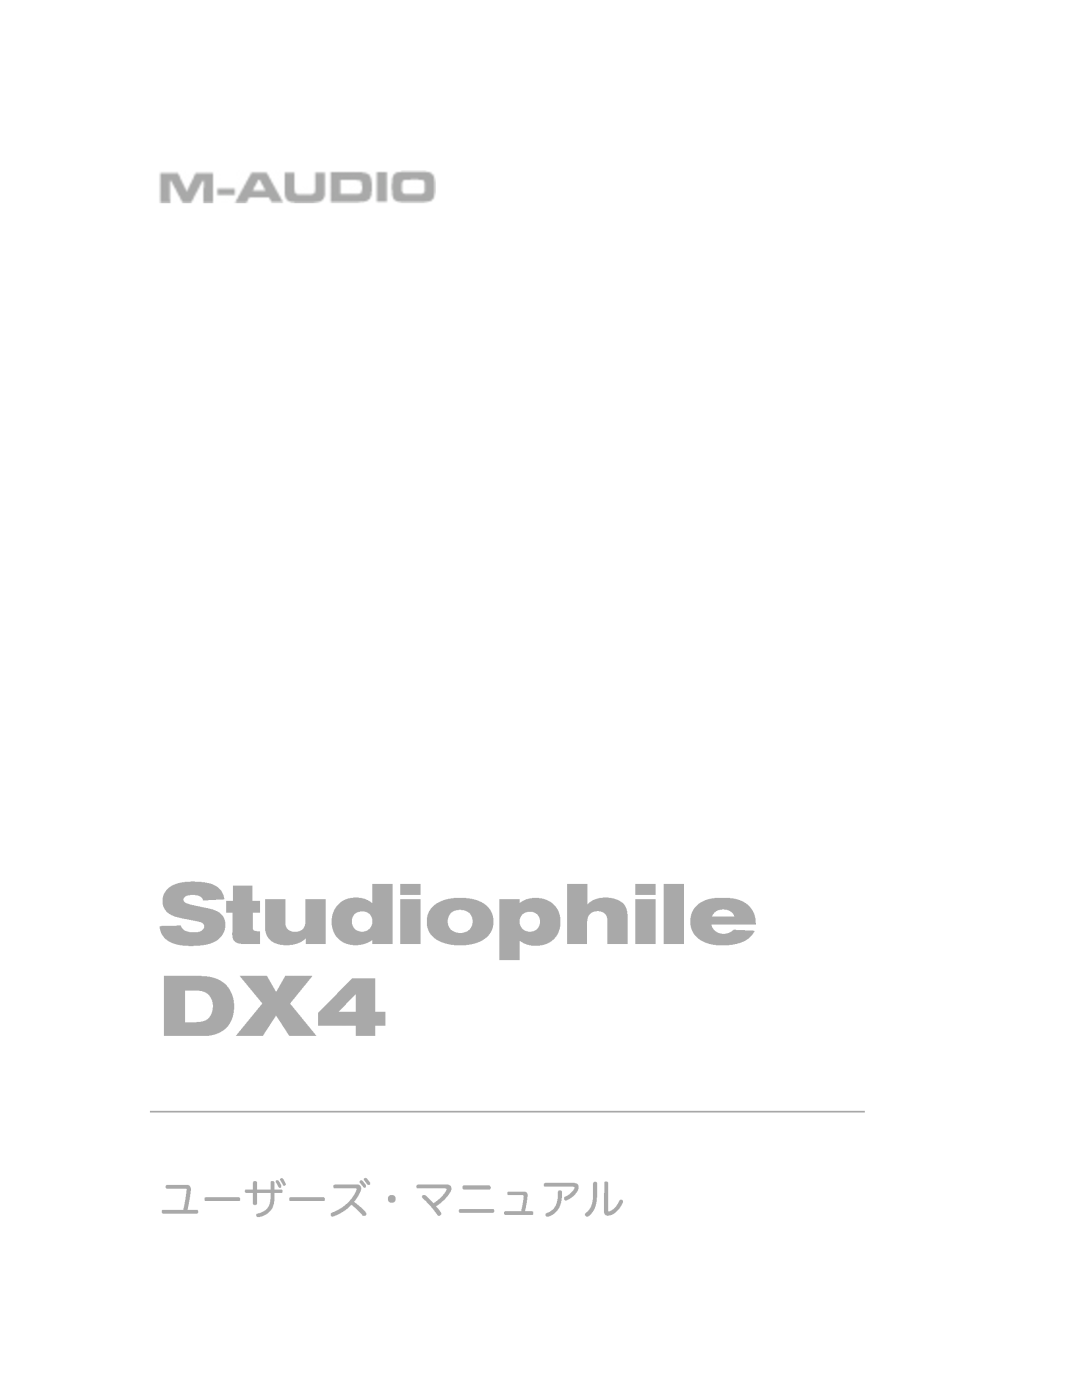 M-Audio manual Studiophile DX4, ユーザーズ・マニュアル 